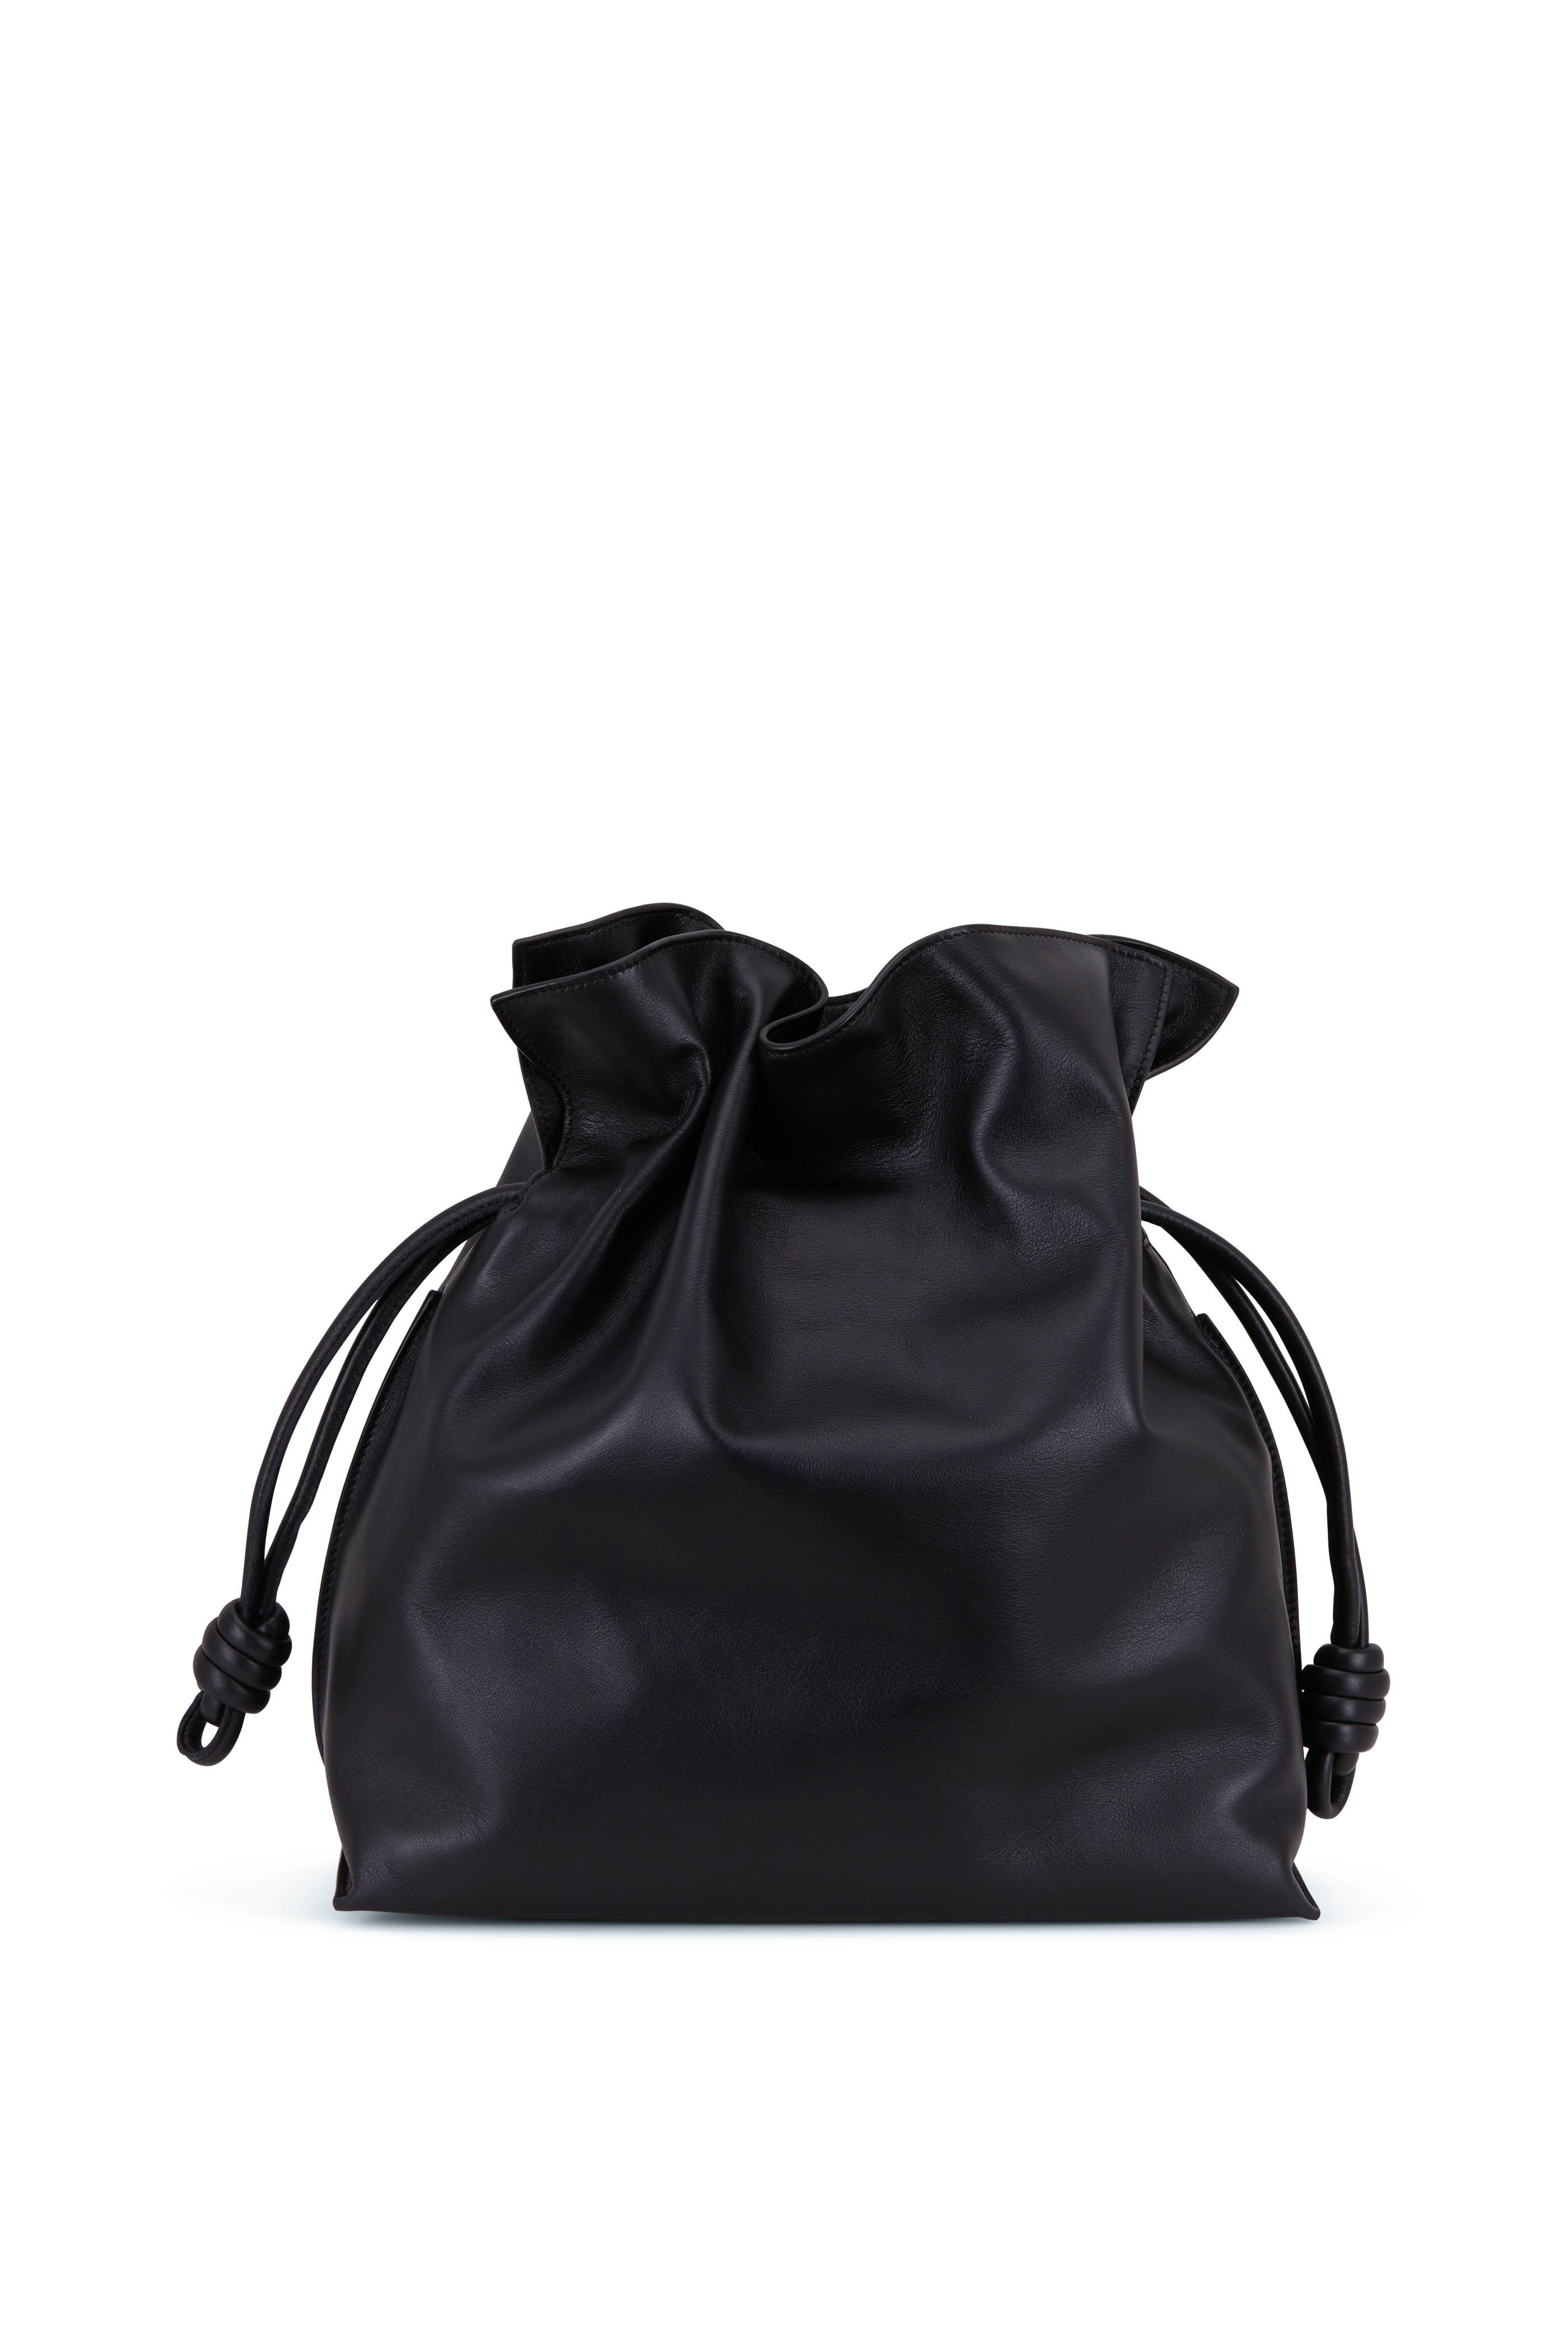 loewe bag black